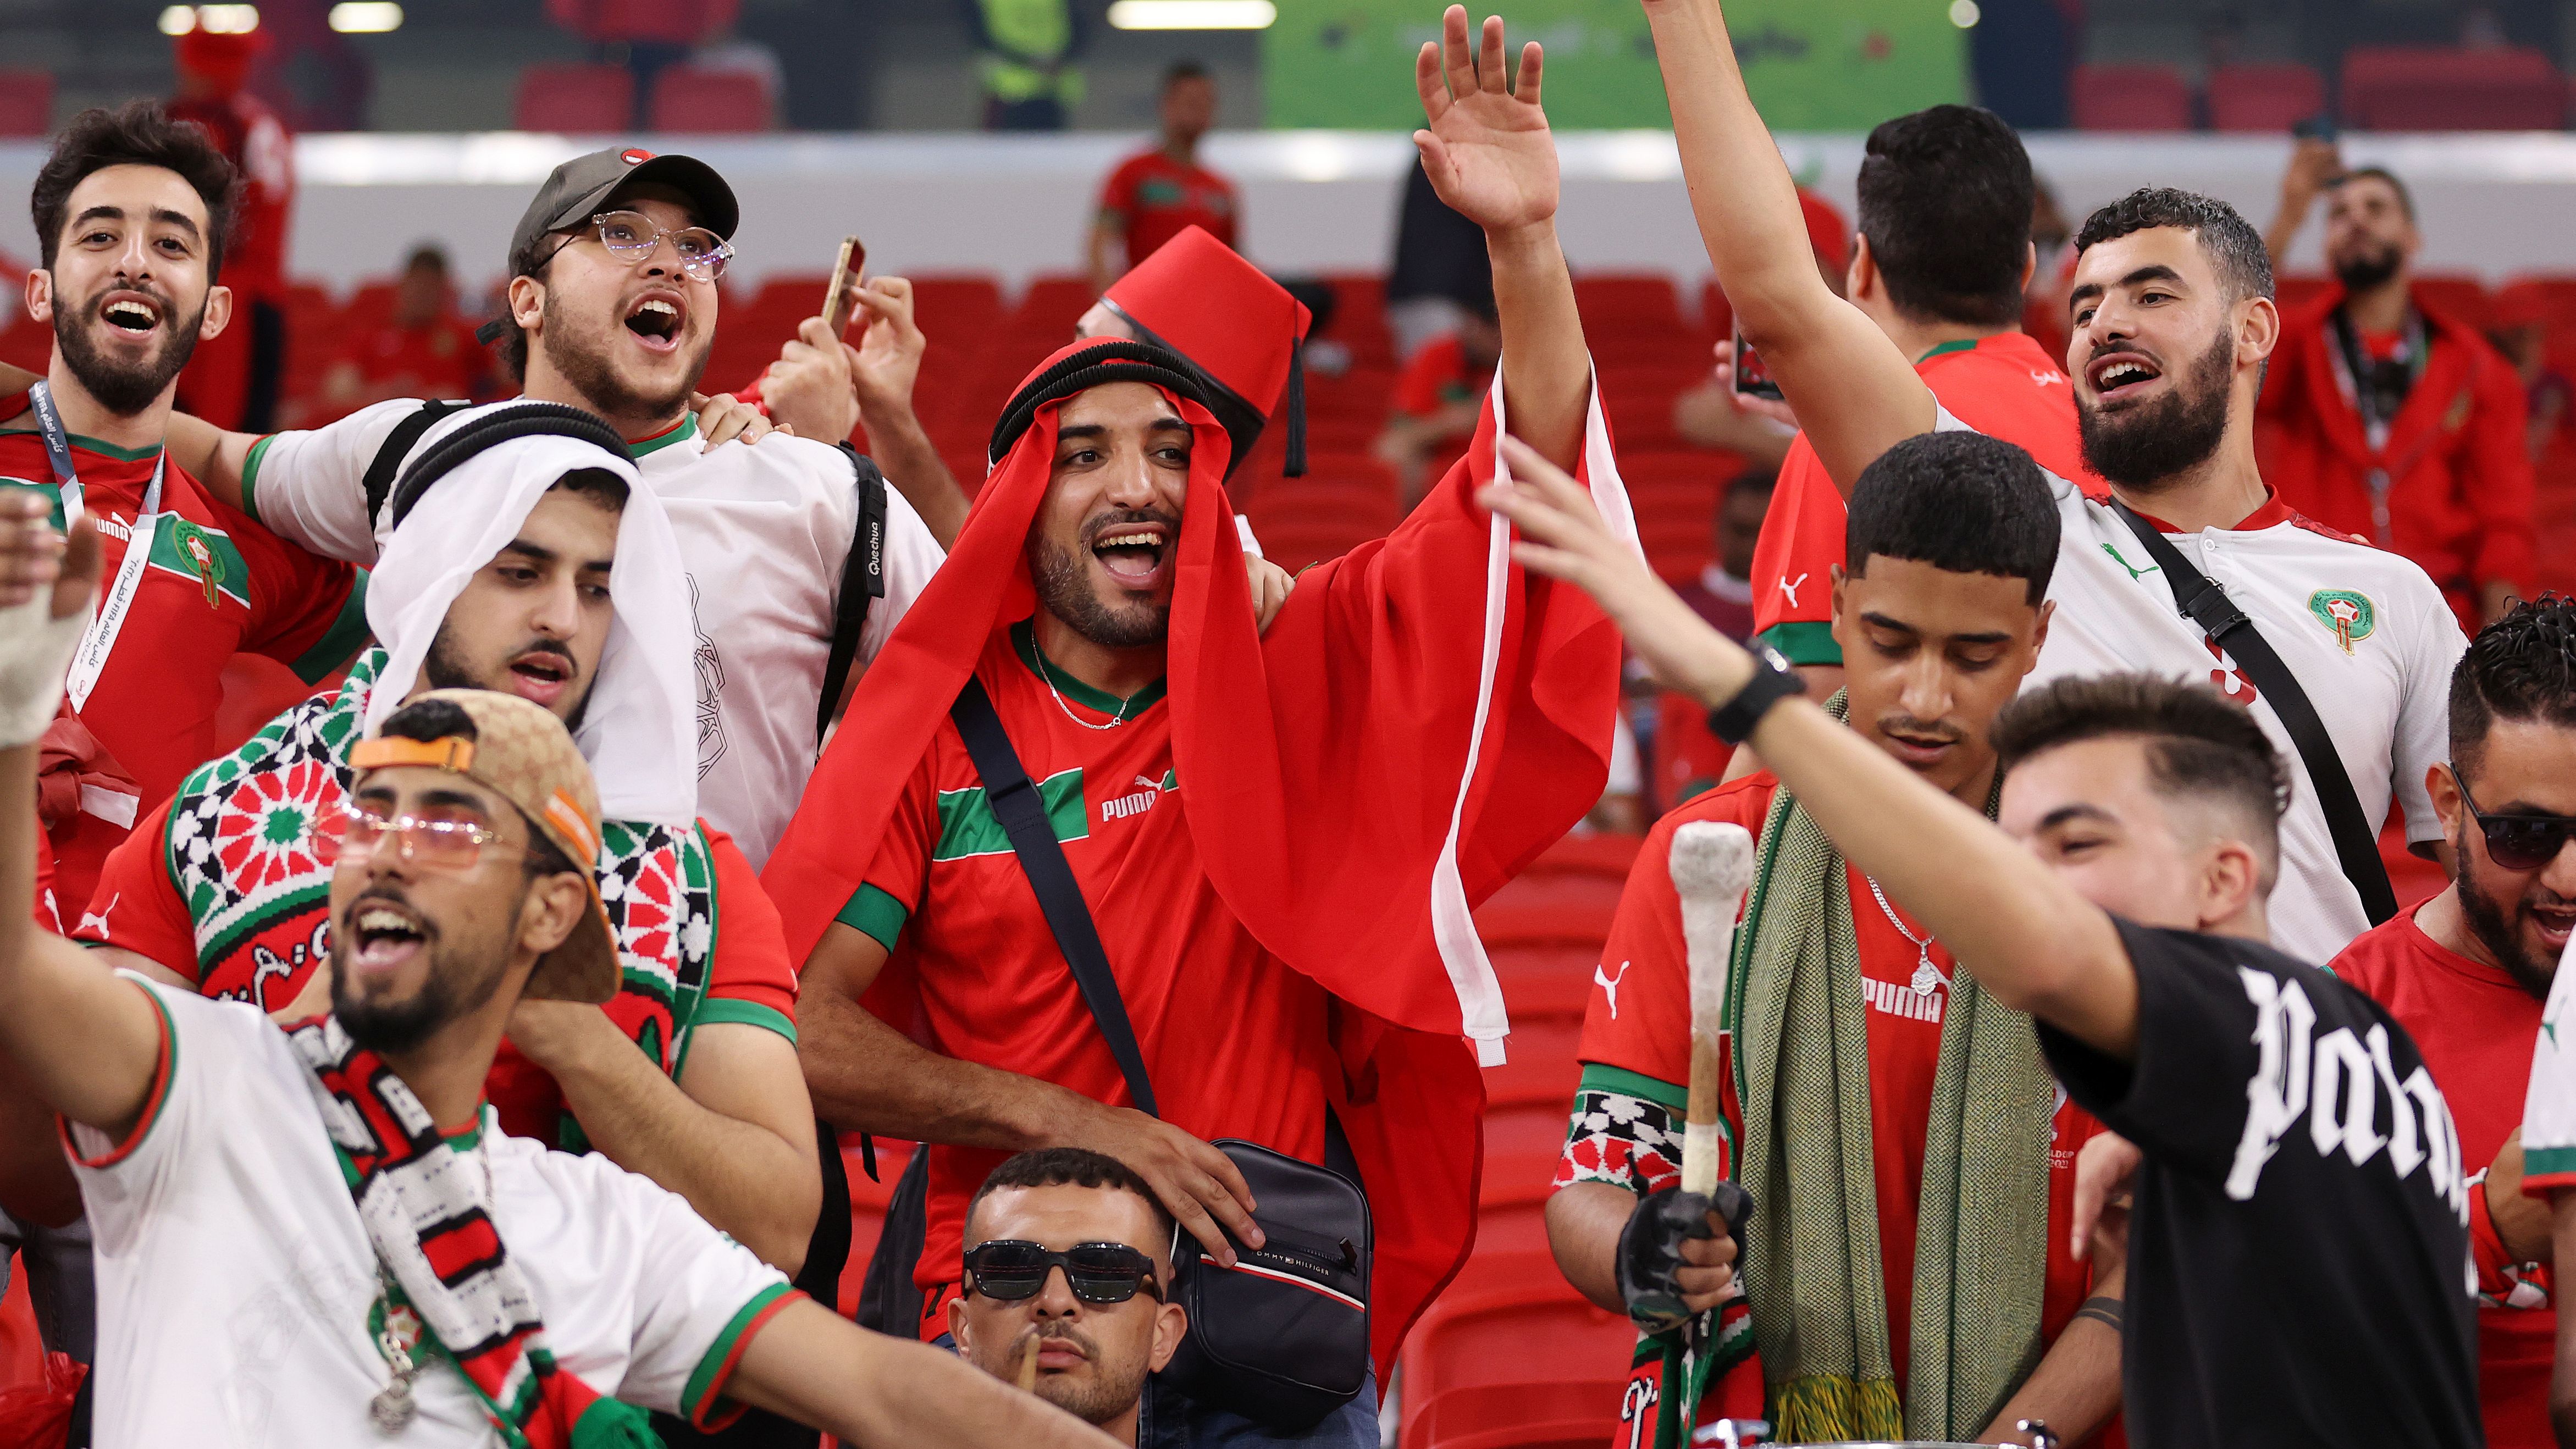 VÉGE: Marokkó legyőzte Kanadát, és csoportelsőként jutott tovább